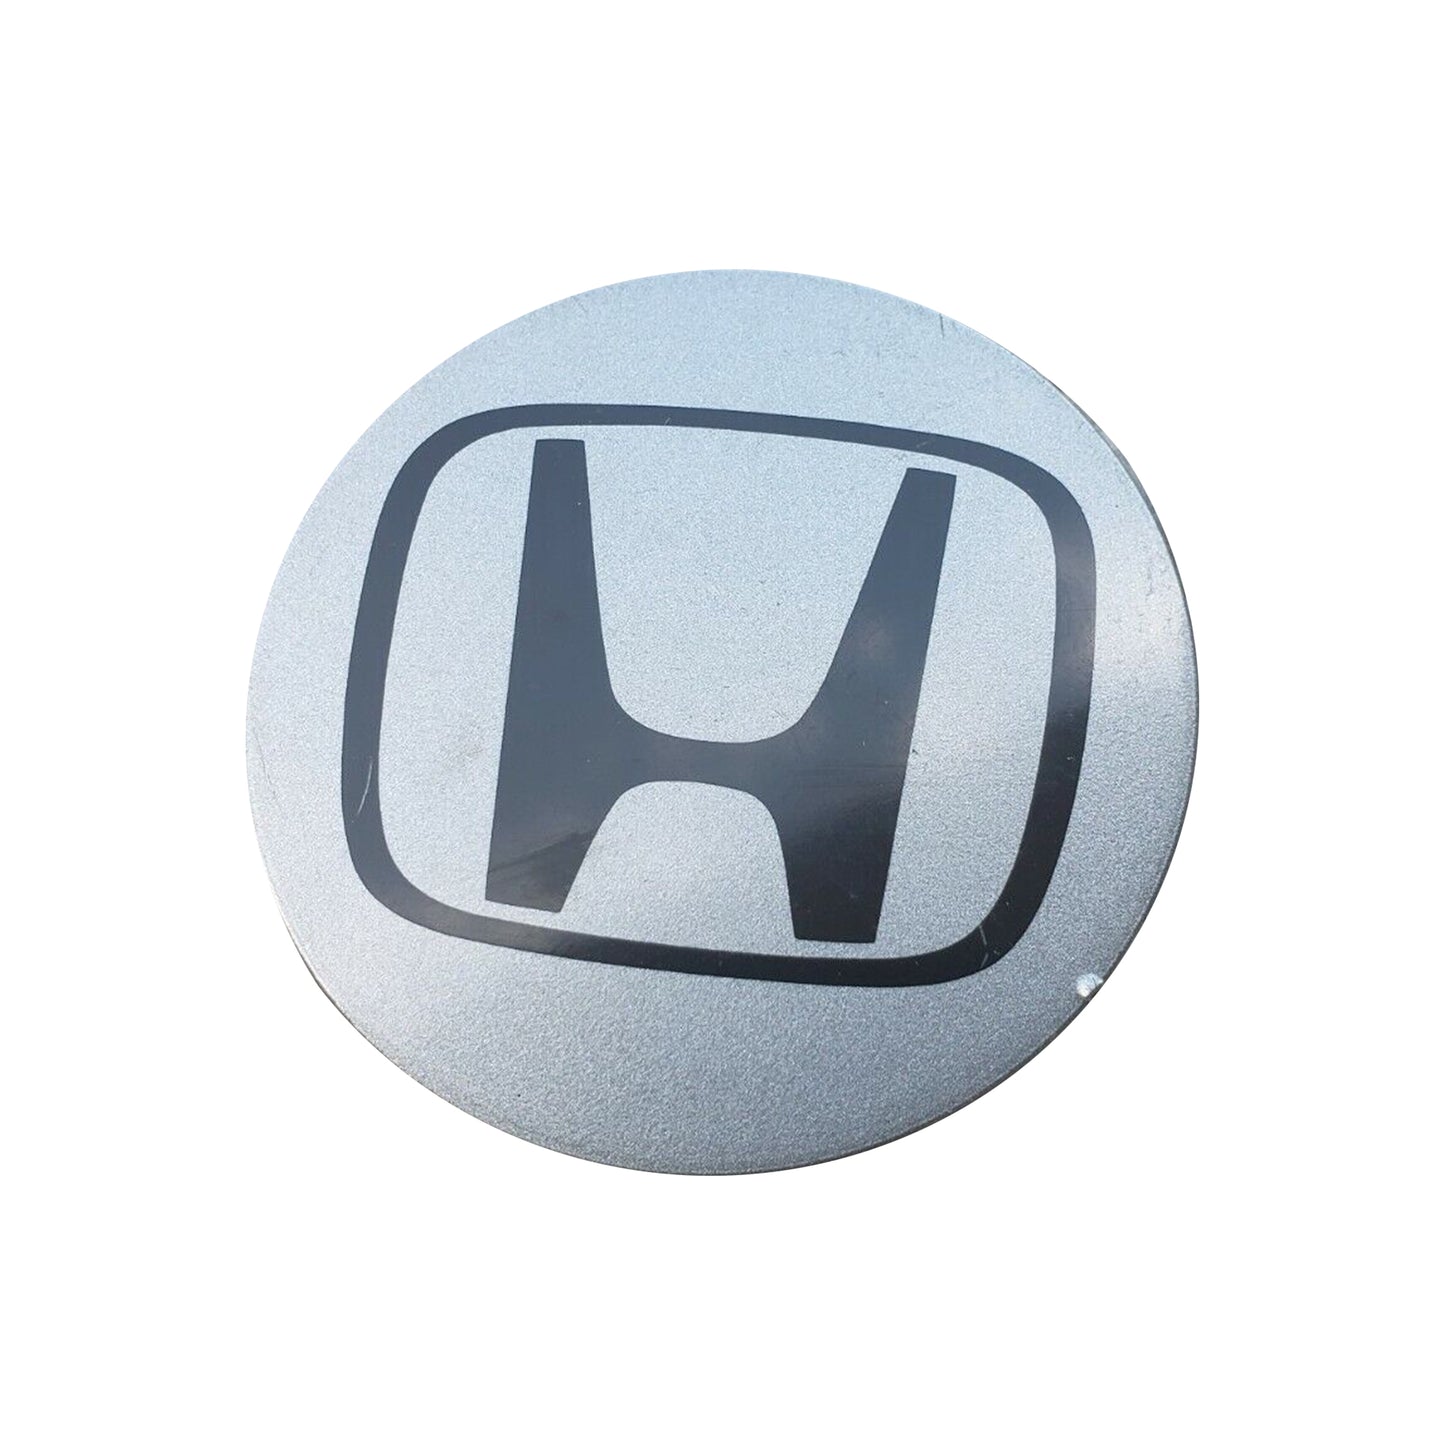 1999-2015 Honda Logo OEM Civic Silver 2 3/4" Set 4 Wheel Hub Rim Center Caps